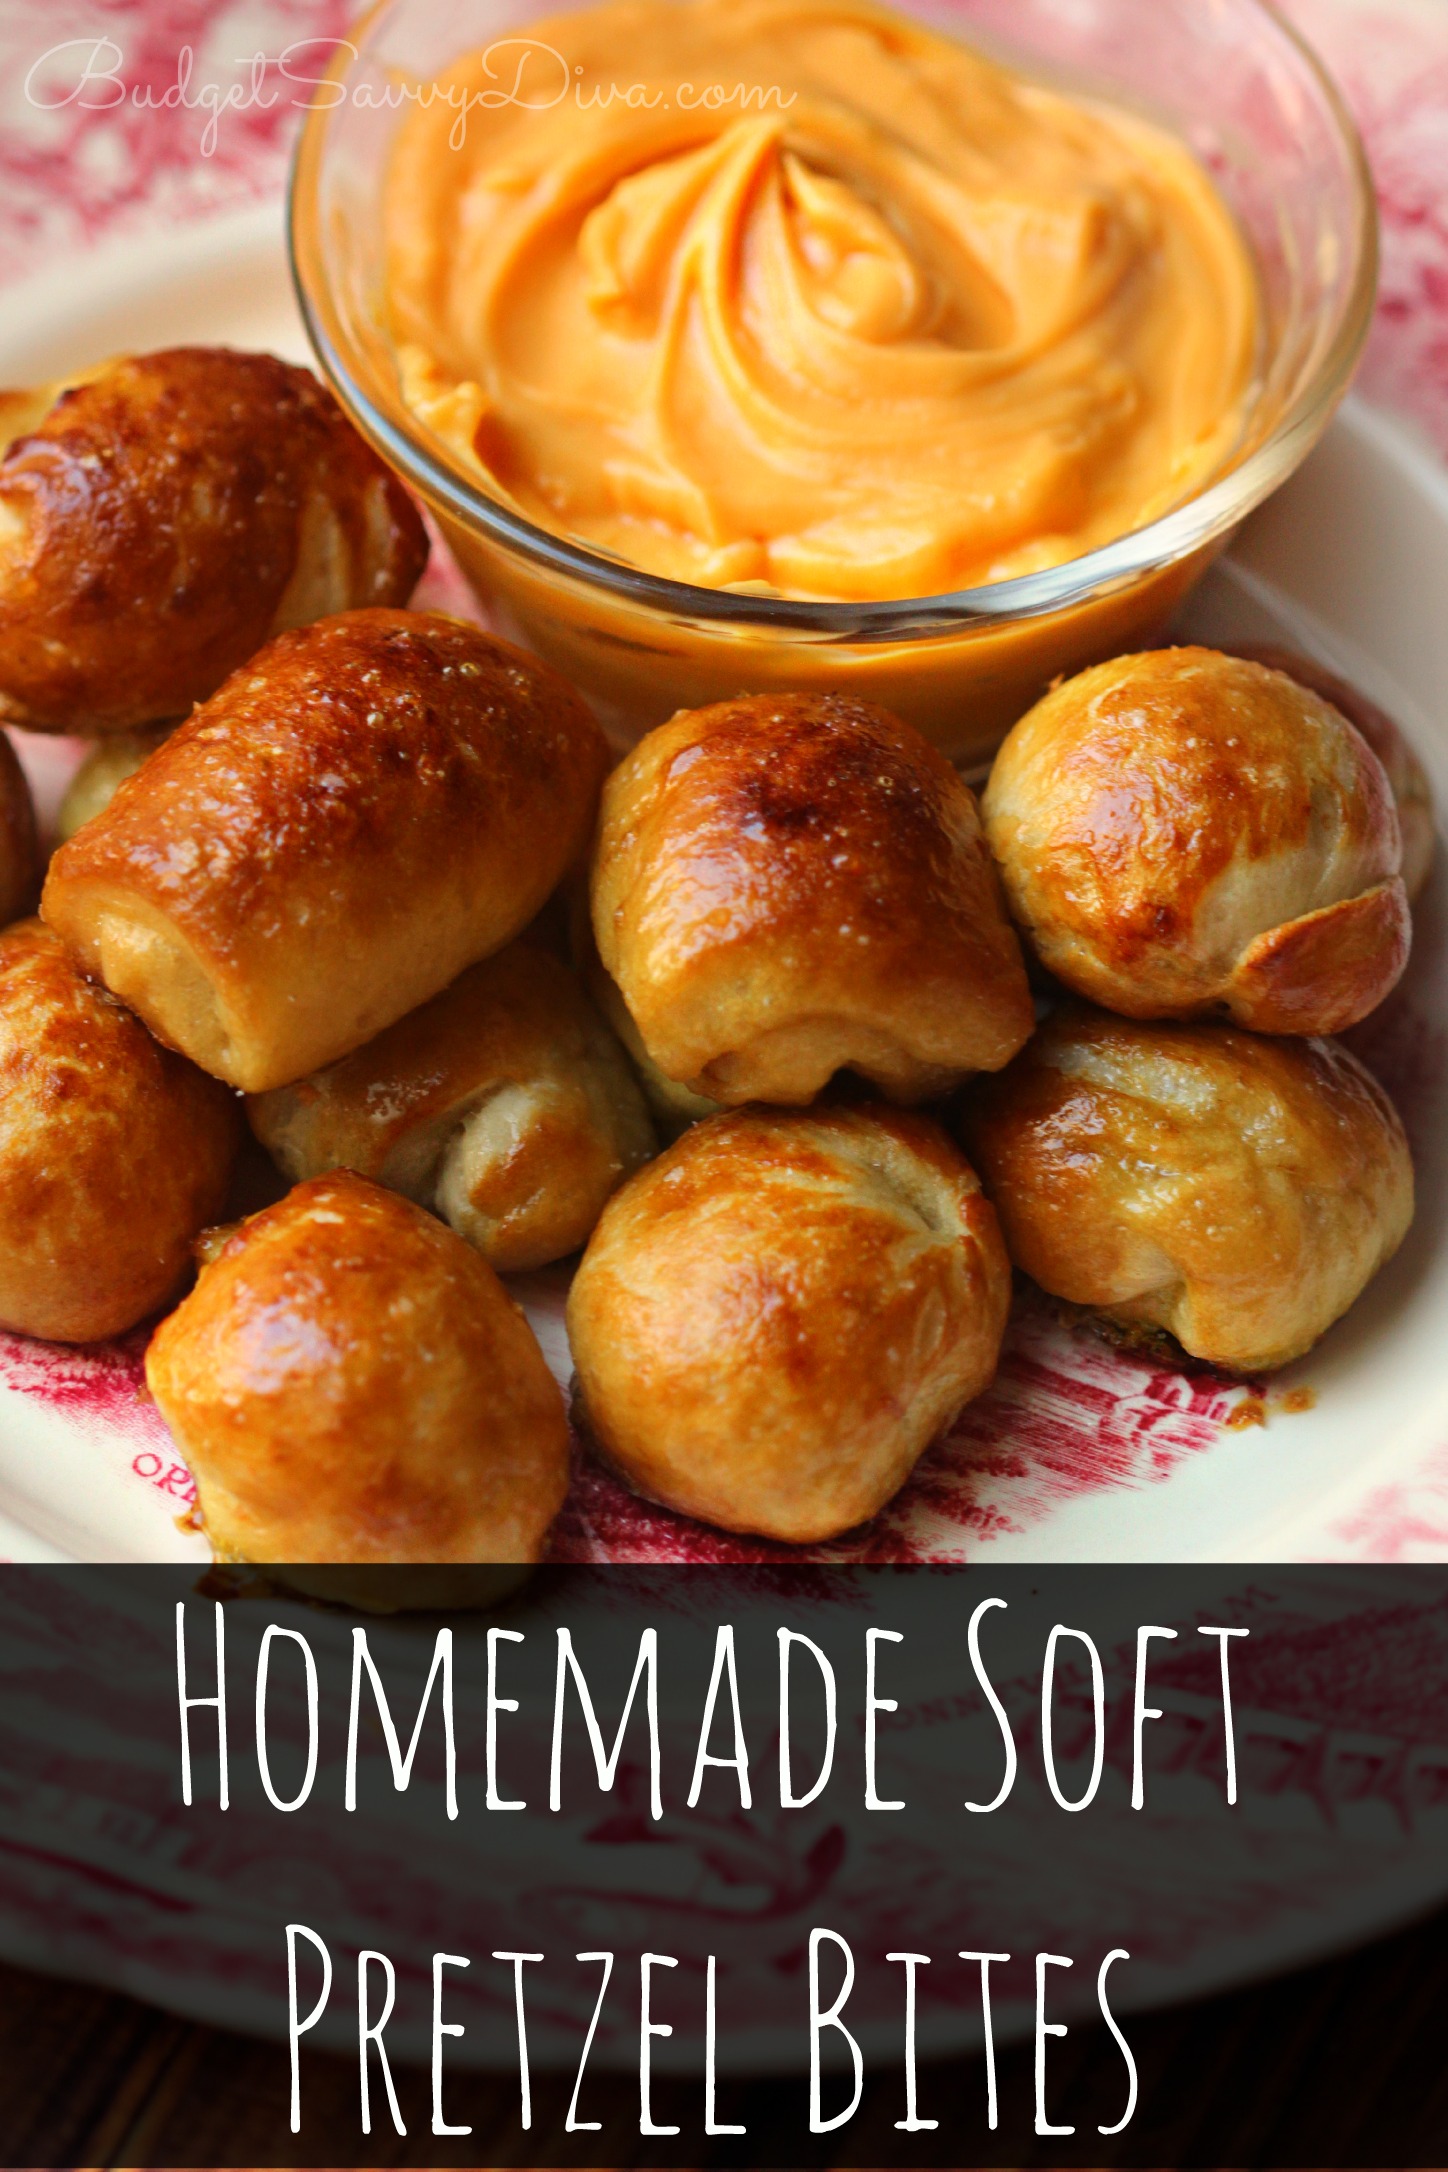 Homemade Soft Pretzel Bites Recipe - Budget Savvy Diva